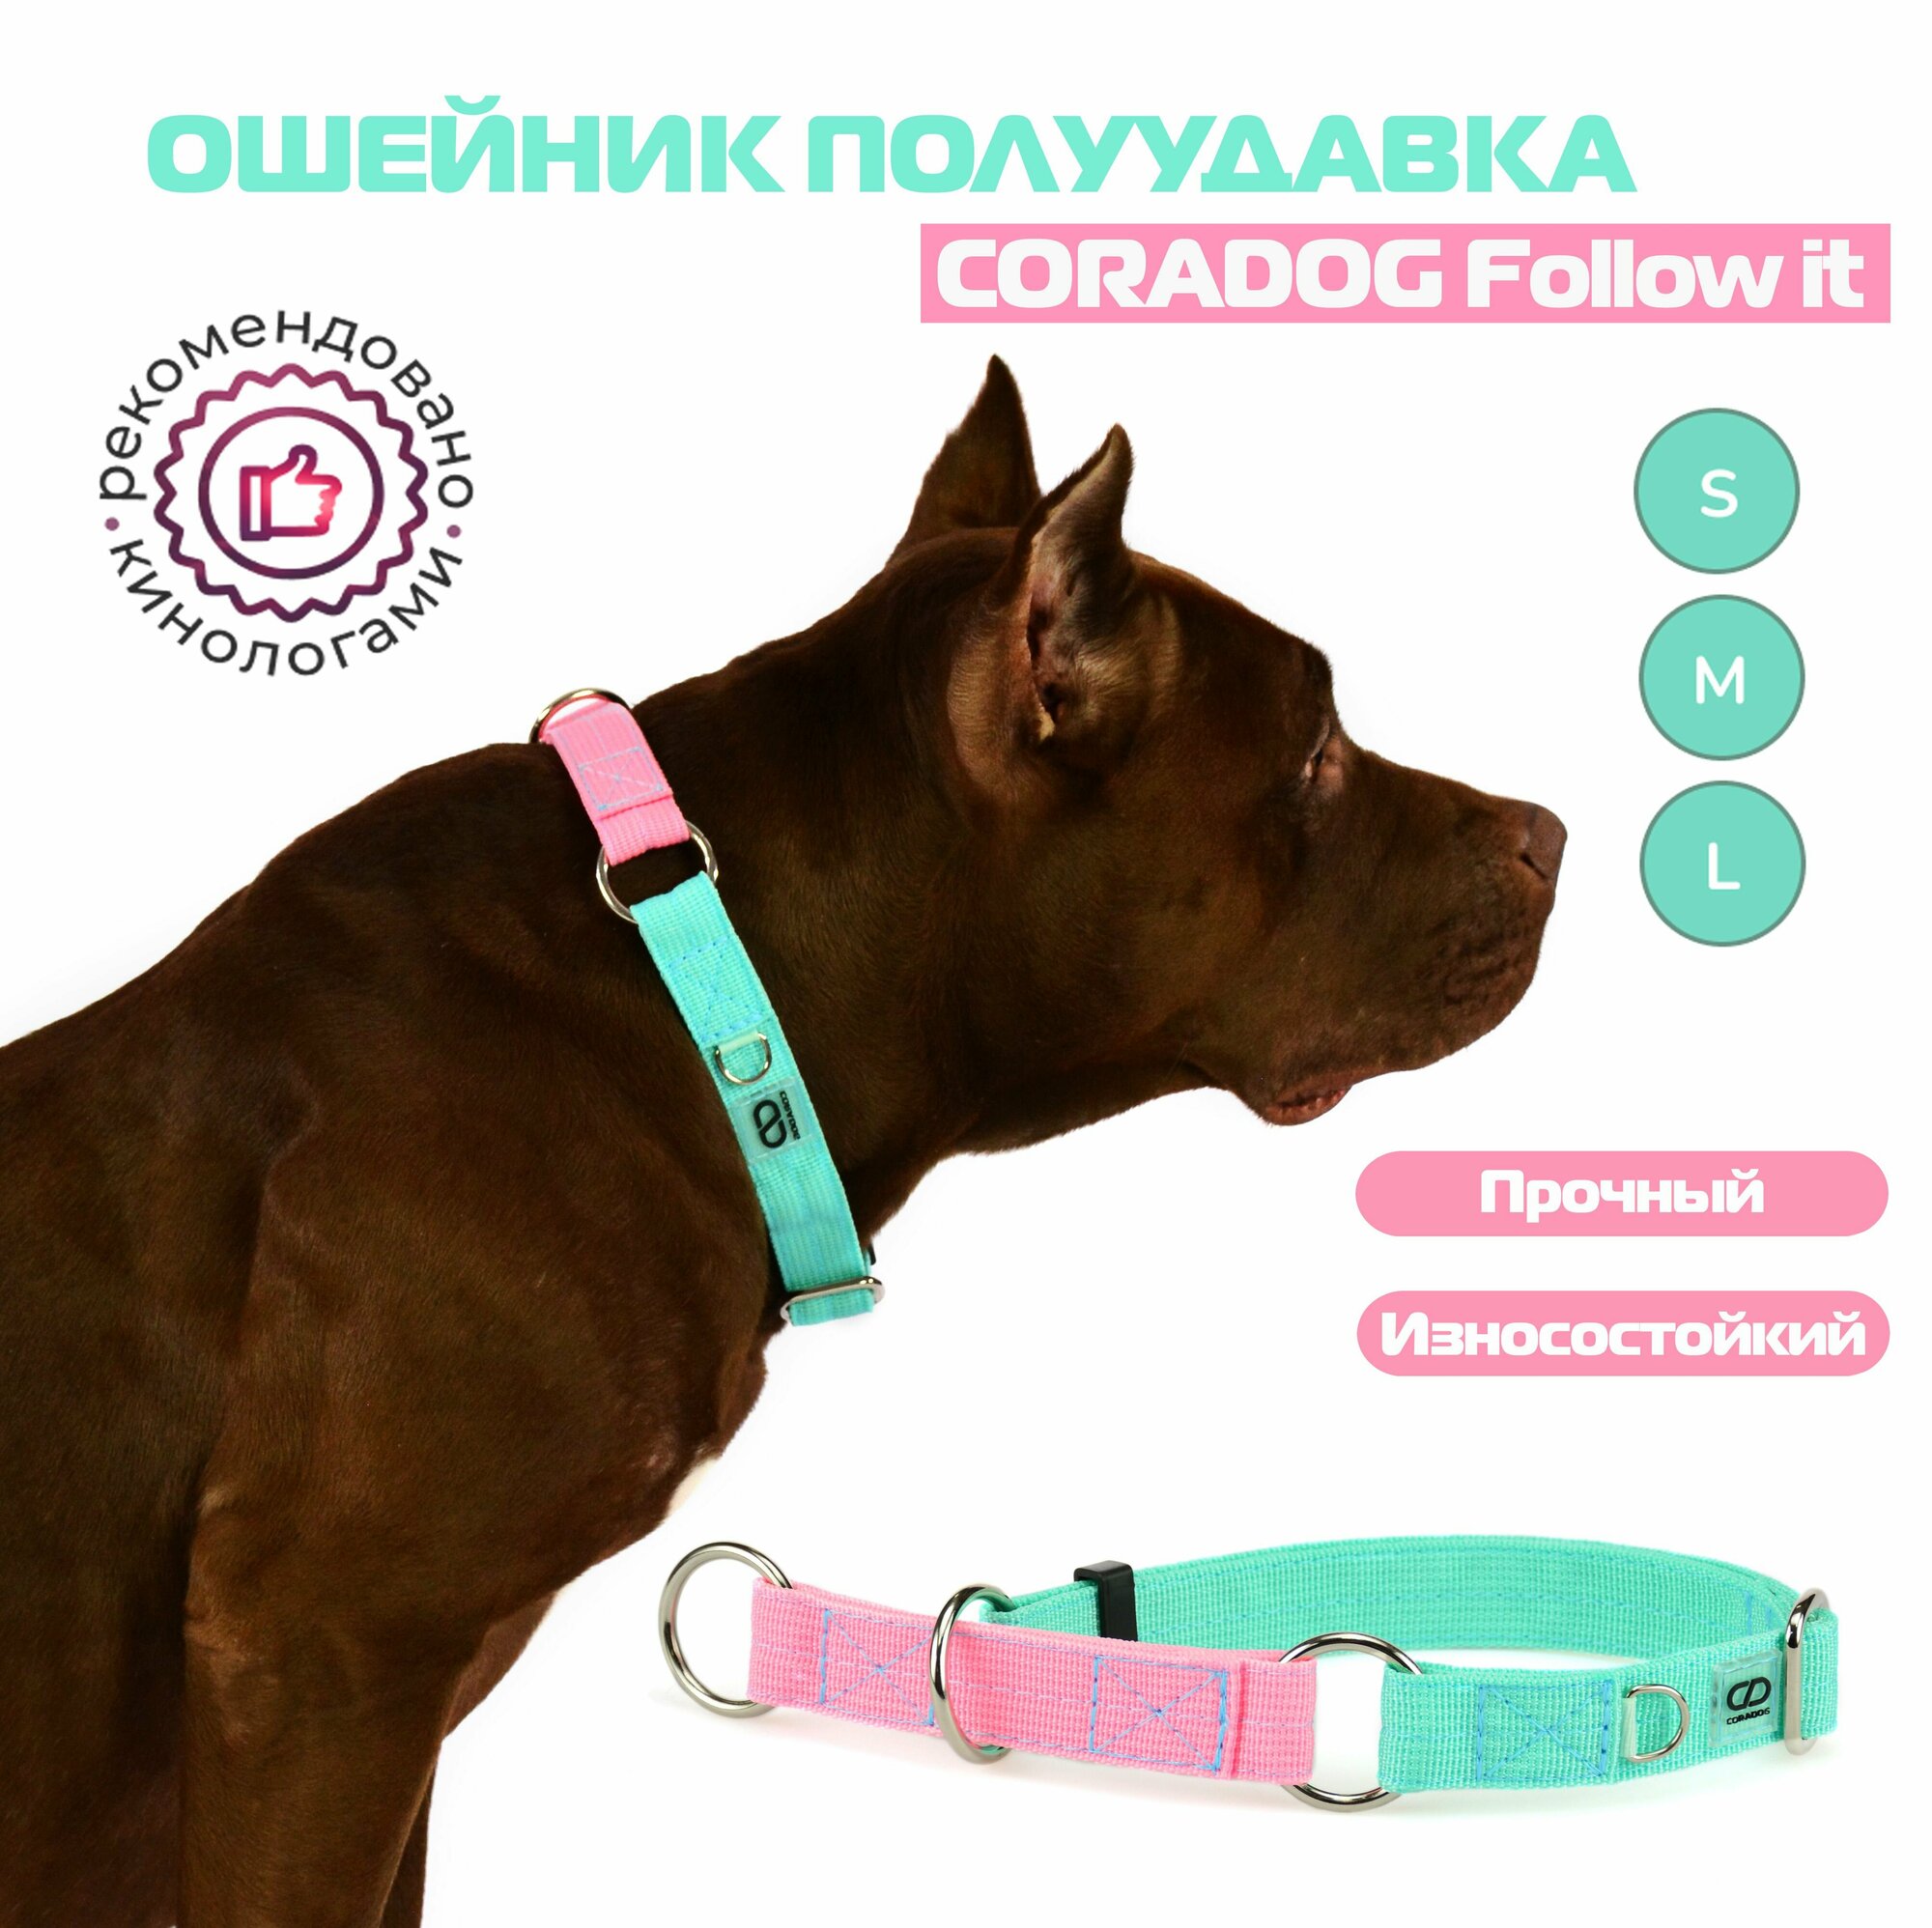 Ошейник-полуудавка, мартингейл, CORADOG Follow it, для средних и крупных собак, мятный розовый, размер L 42-65 см, ширина 2,5 см